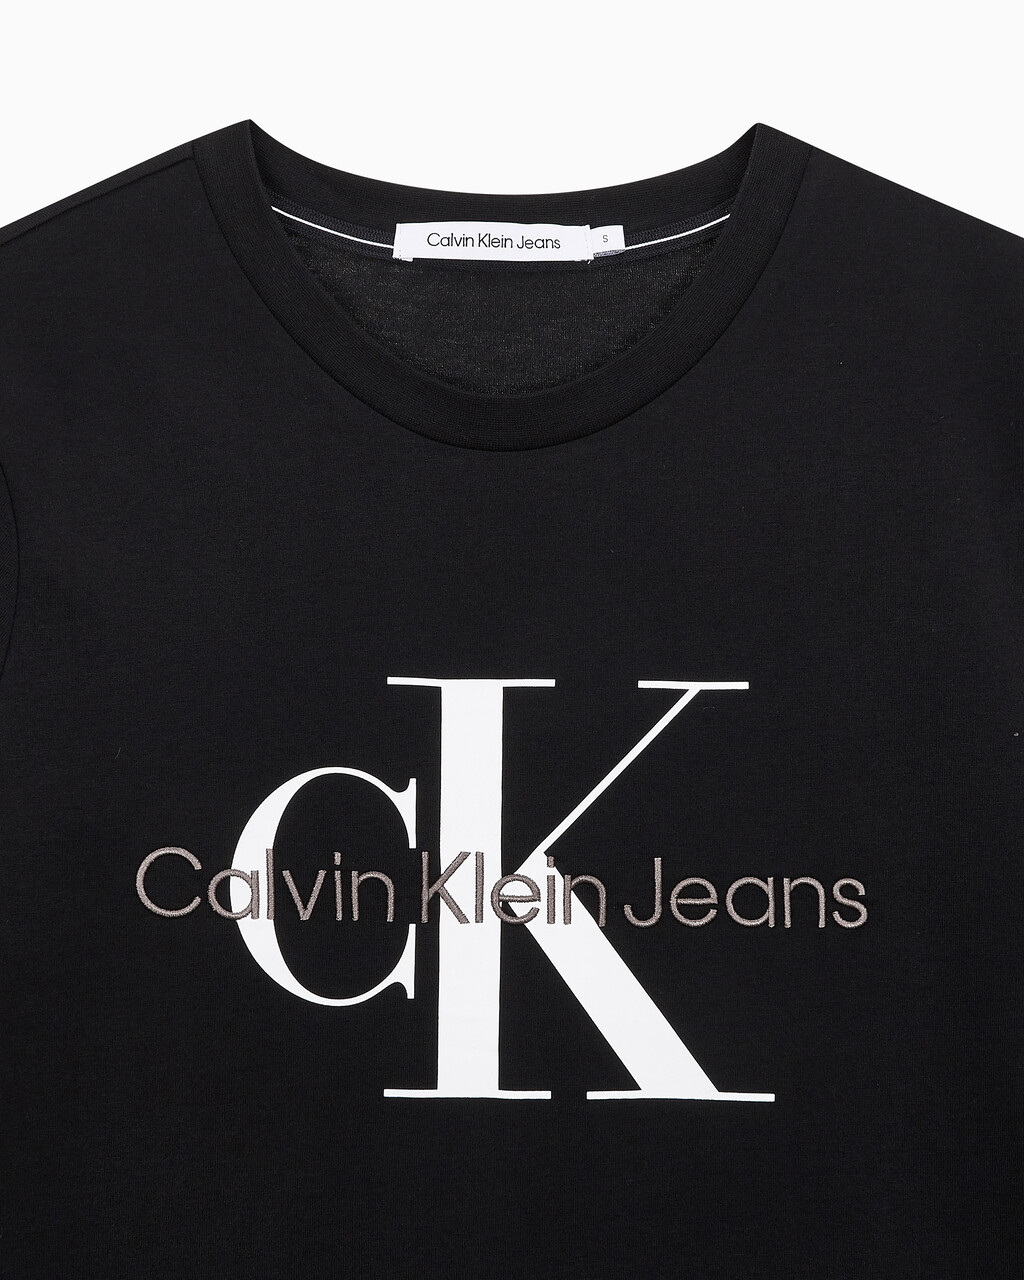 Buy 여성 스트레이트핏 모노그램로고 크루넥 반팔 티셔츠 in color CK BLACK